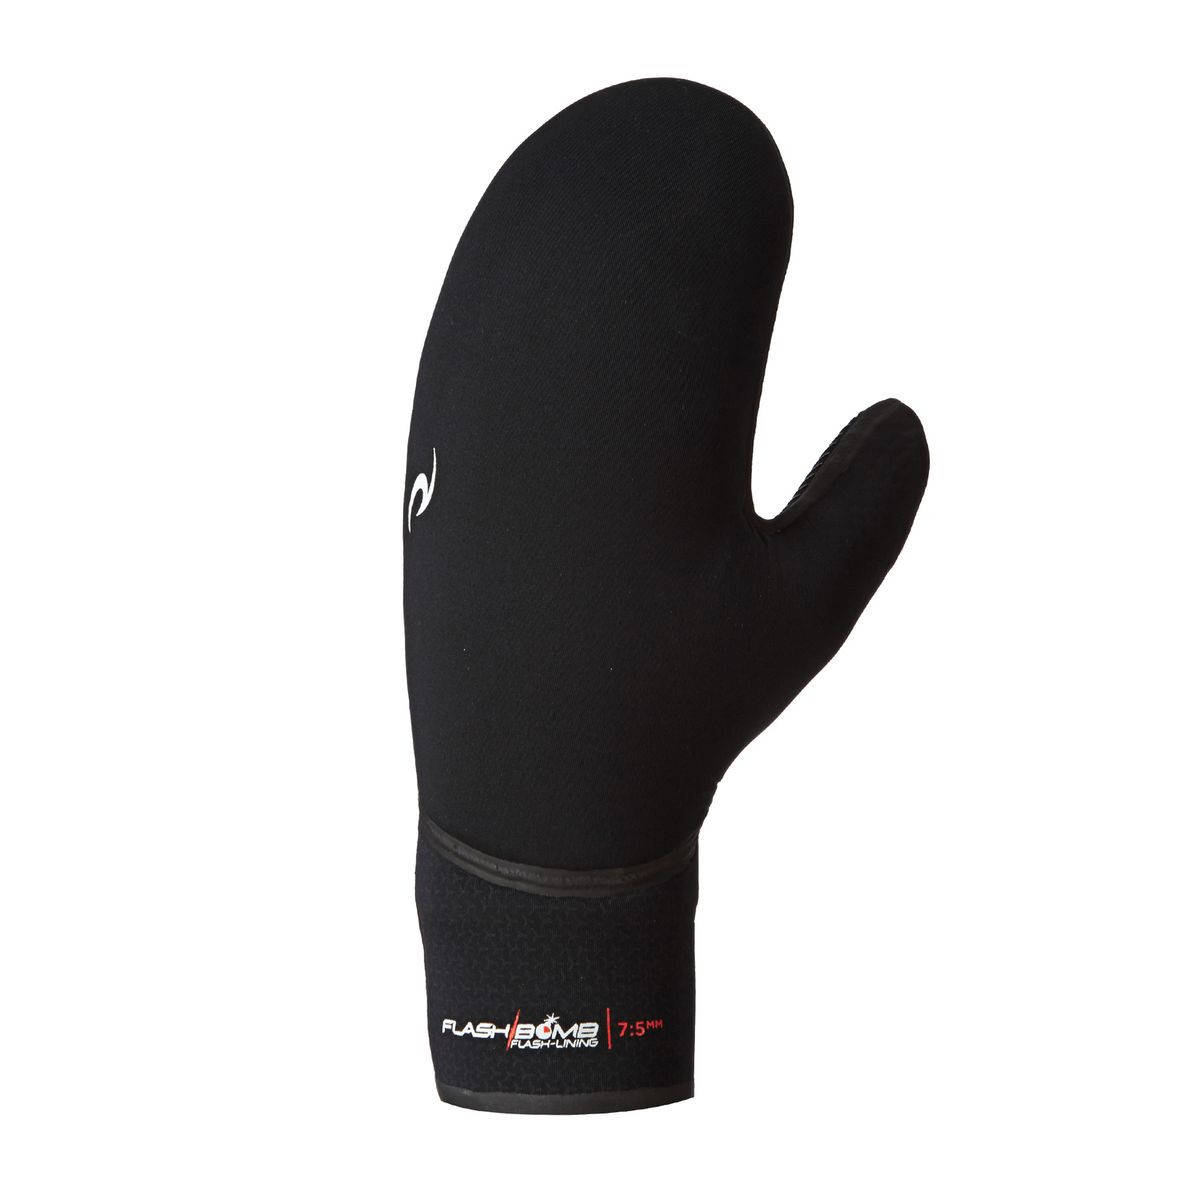 Rip Curl Flashbomb 7/5mm Mitten Wetsuit Gloves - Black